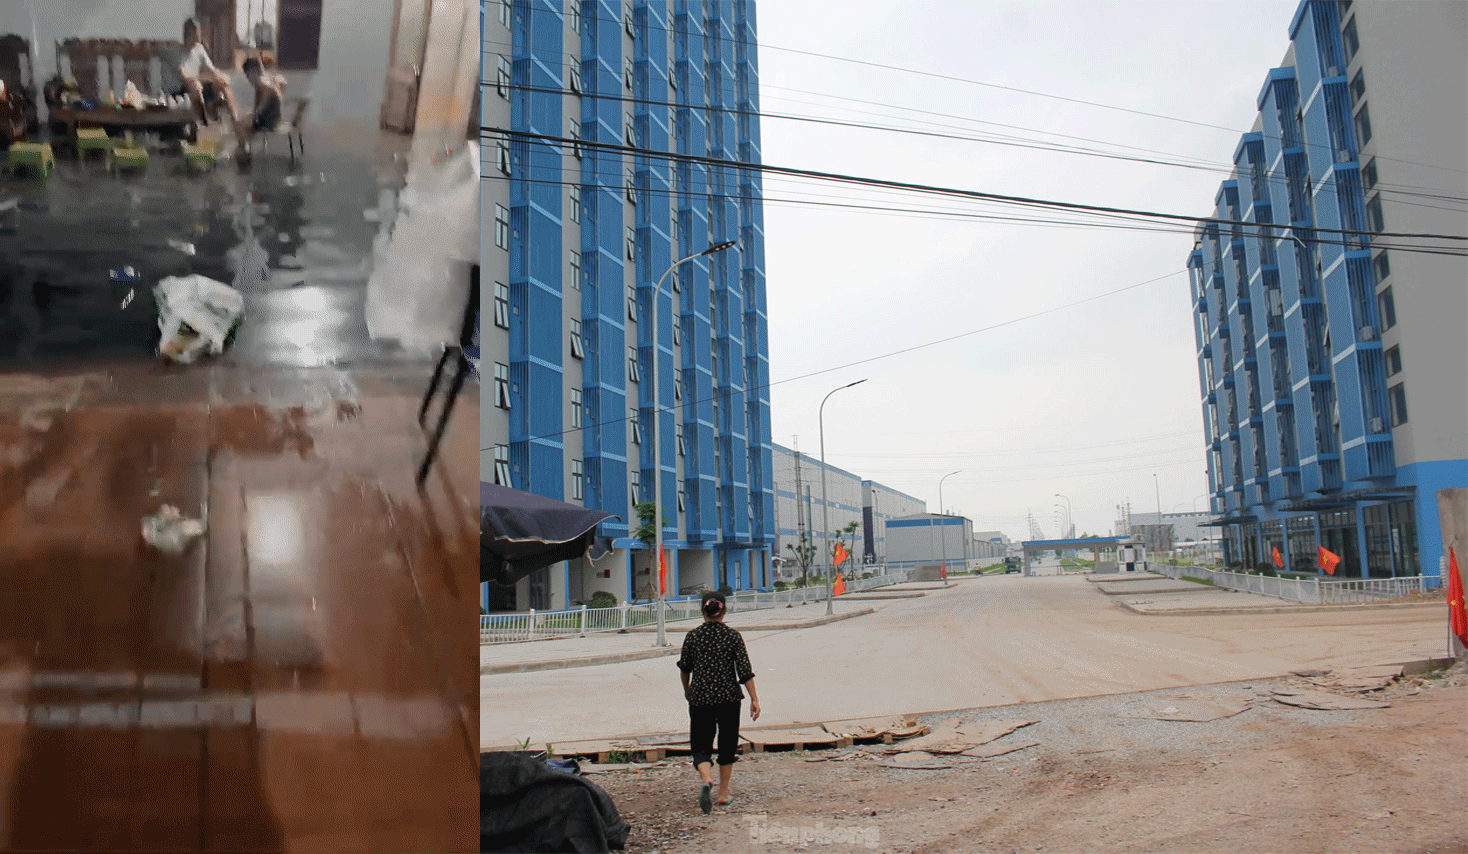 Cận cảnh dự án NƠXH lấp kênh thoát nước gây ngập lụt nhà dân ở Bắc Giang